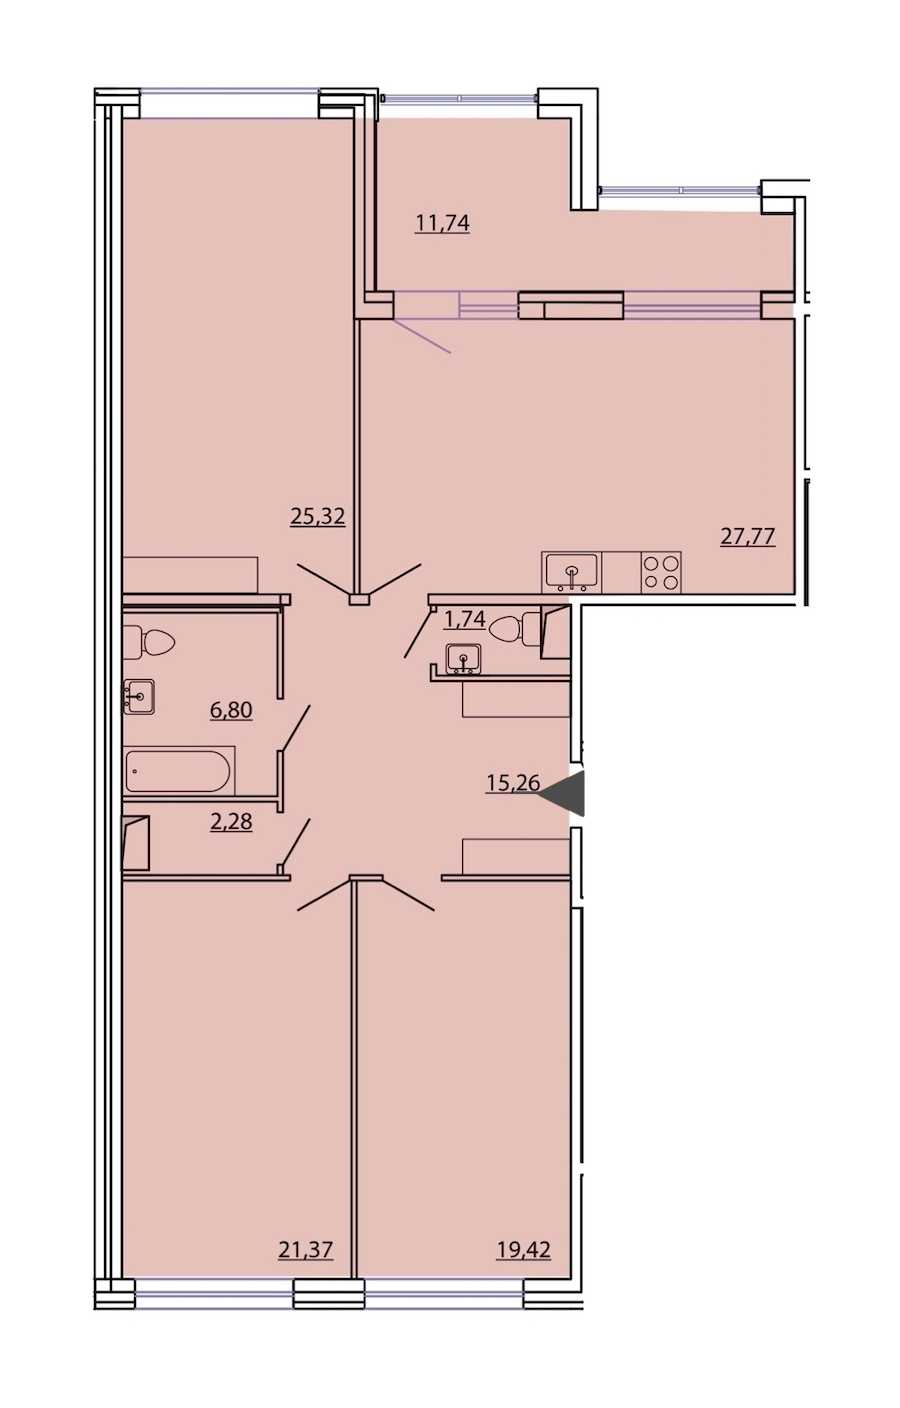 Трехкомнатная квартира в : площадь 125.83 м2 , этаж: 4 – купить в Санкт-Петербурге